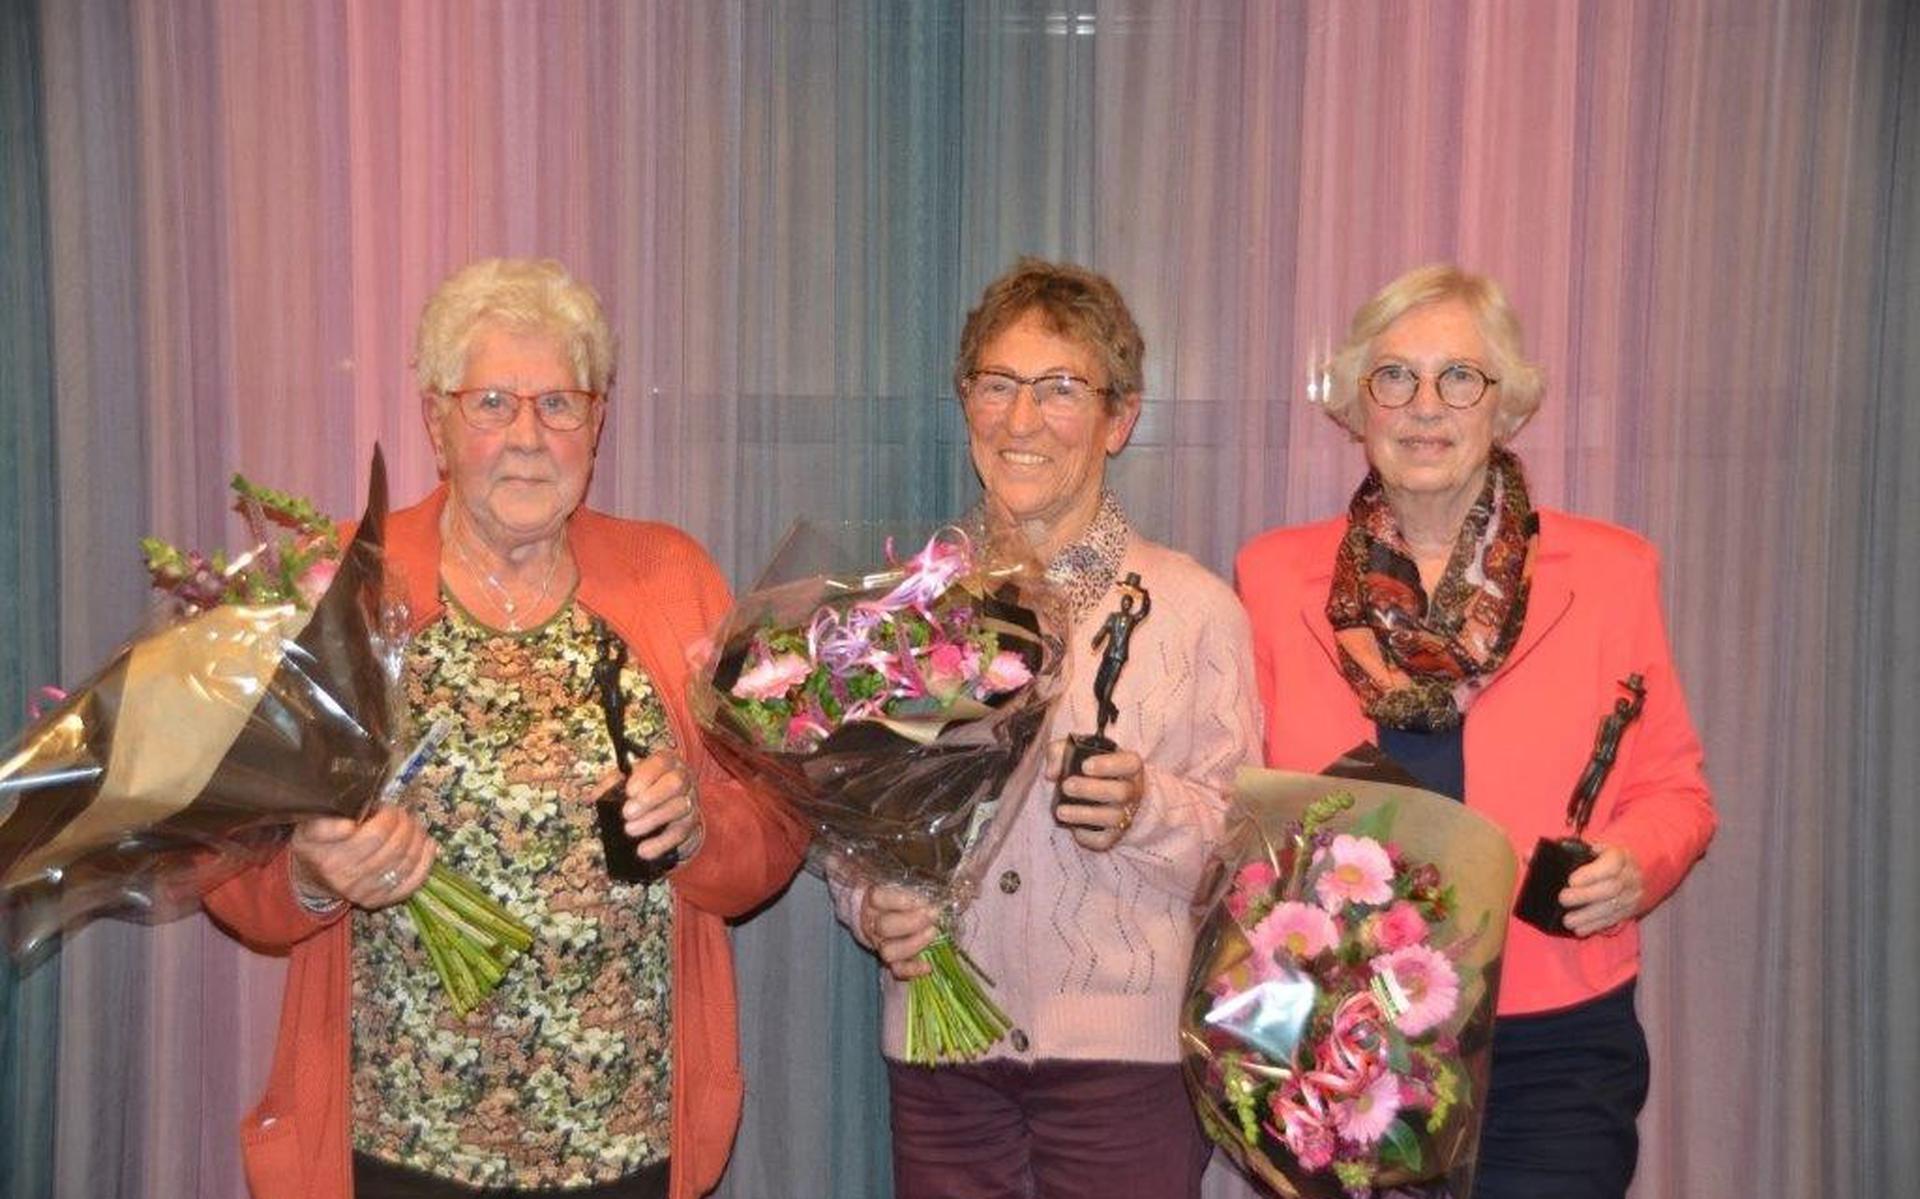 De drie jubilarissen, die 50 jaar lid zijn. Van links naar rechts: Roelie van Zanten, Ini Ringersma en Thea Bergsma.